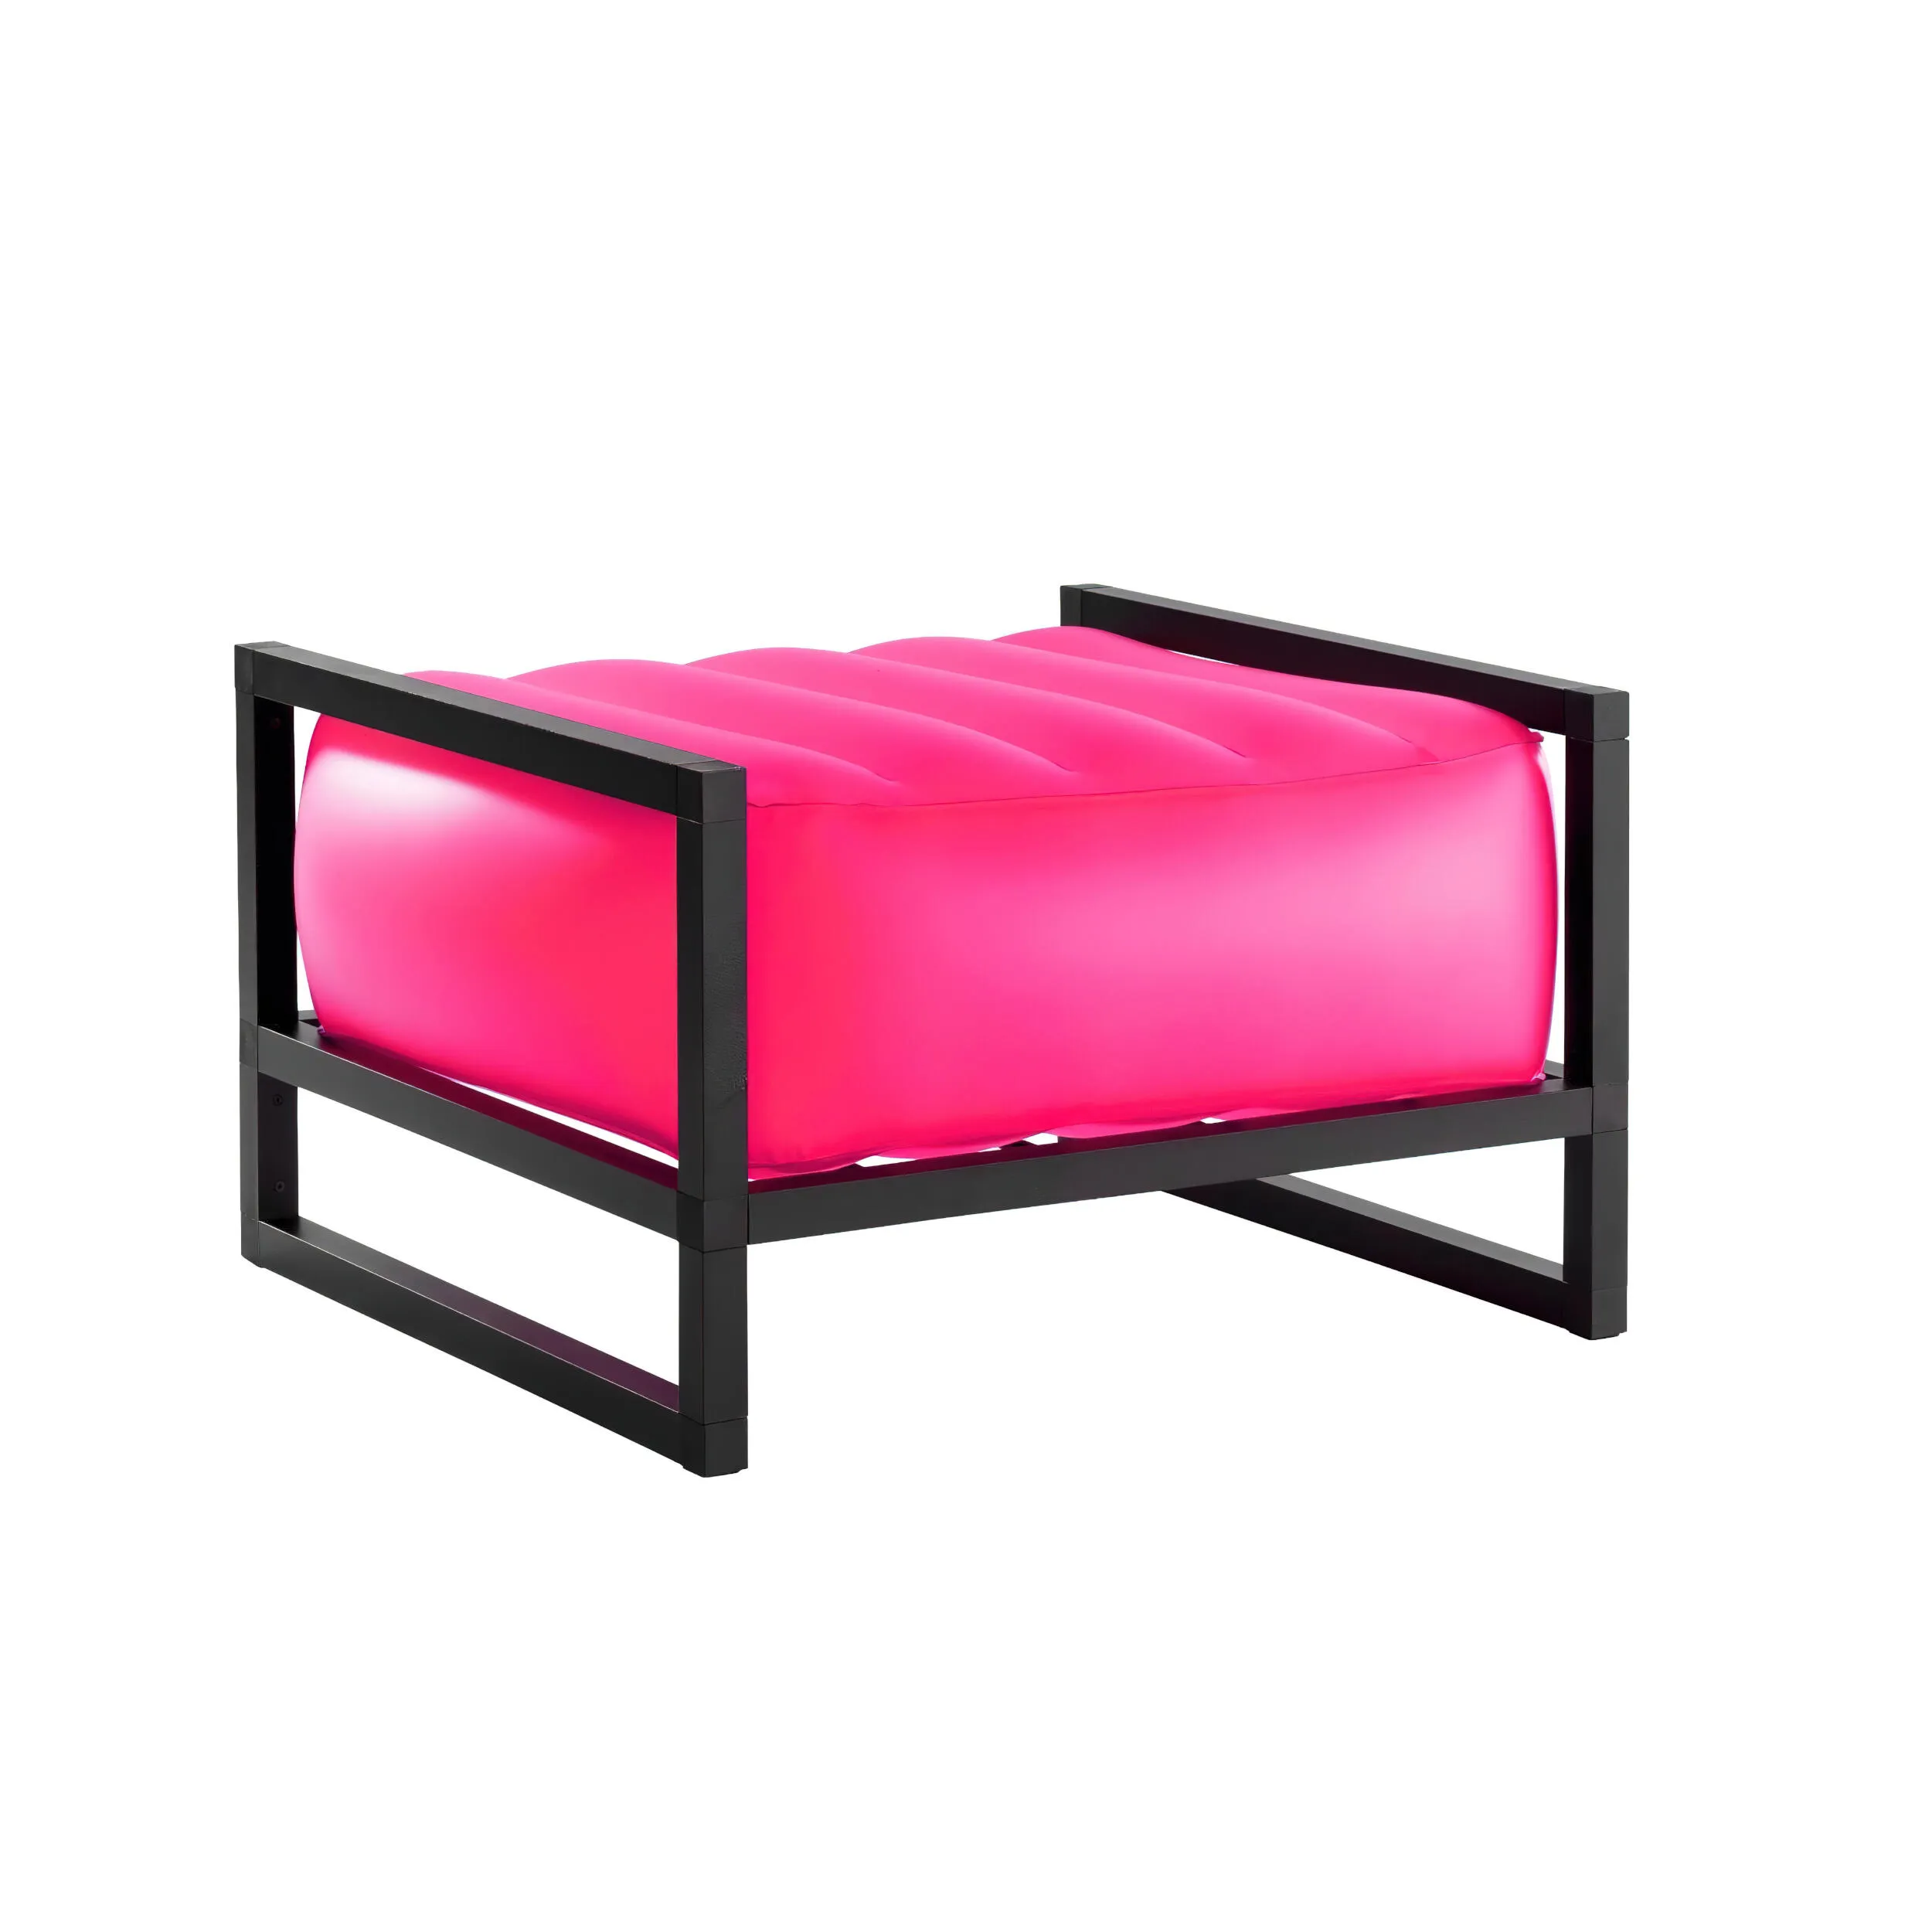 pouf Yomi eko illuminato struttura in legno naturale, dimensioni 62x70xH40 cm peso 9 kg, seduta gonfiabile in TPU colore rosa traslucido